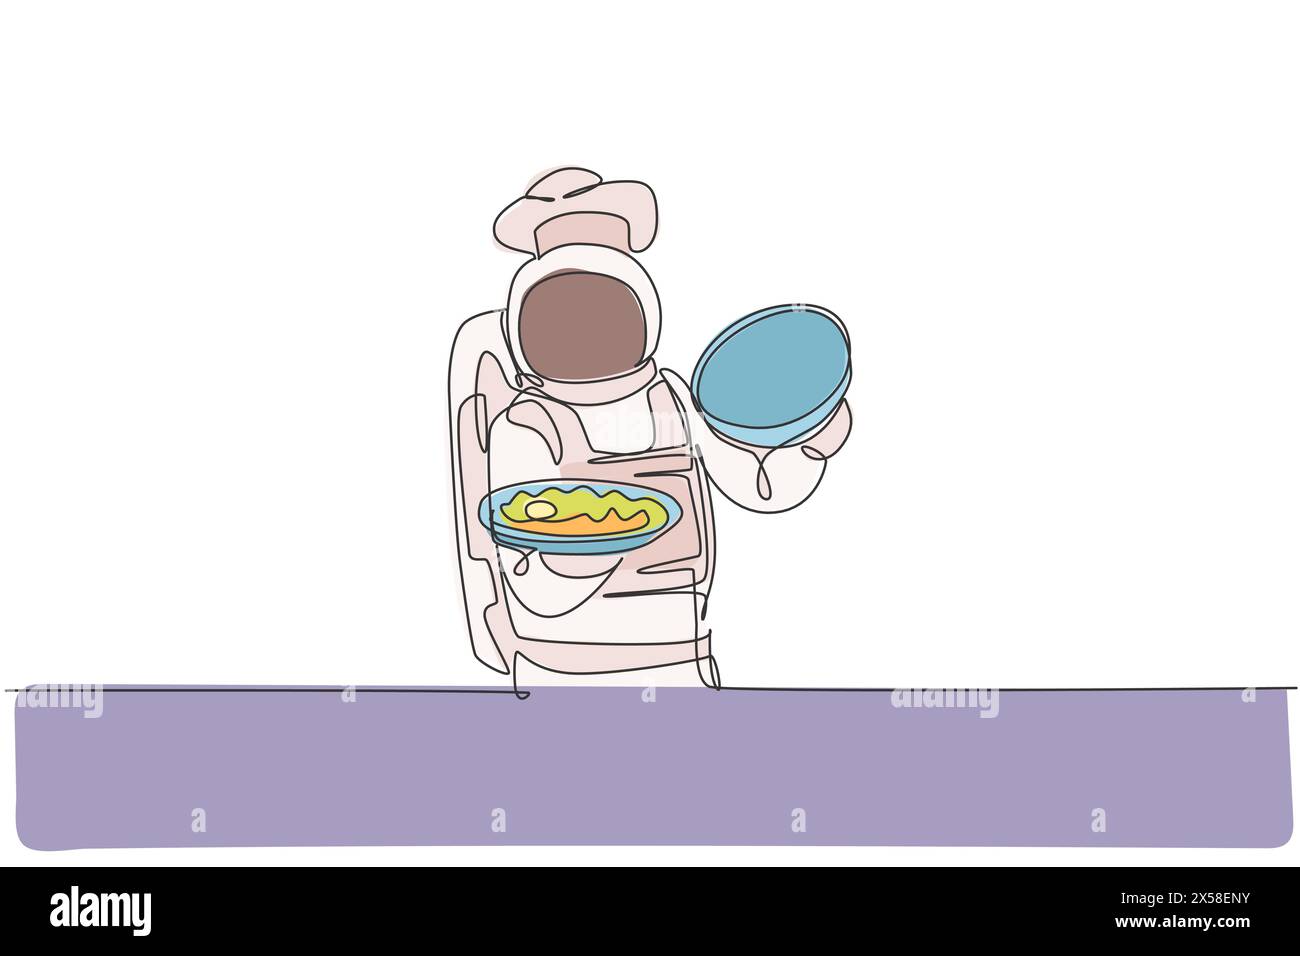 Un disegno continuo di un giovane chef astronauta che apre il vassoio di cibo cloche con piatti deliziosi. Menu di piatti salutari in stile ristorante. DIN Illustrazione Vettoriale